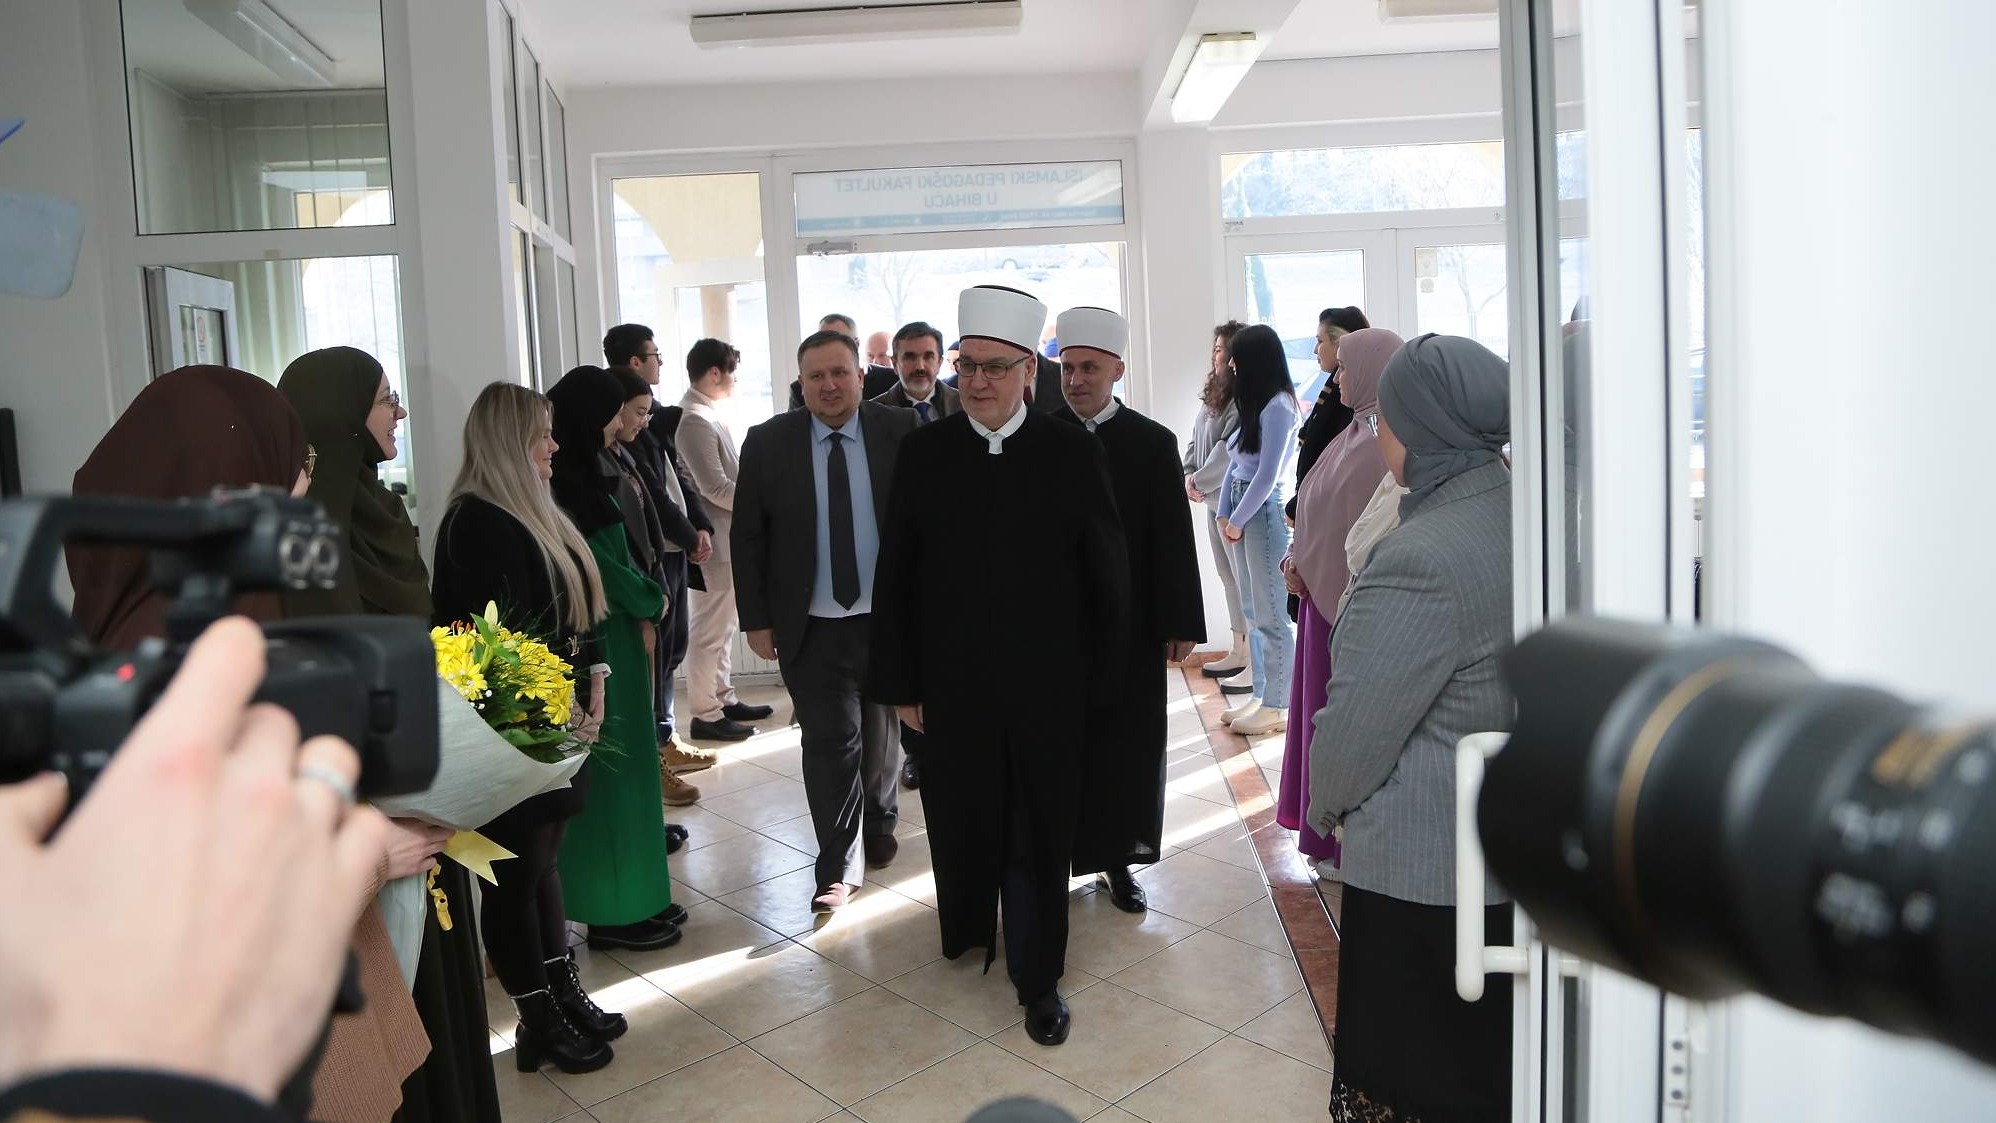 Reisul-ulema posjetio IPF u Bihaću: Vaši alumnisti su kičma obrazovnog procesa u Zajednici (VIDEO)